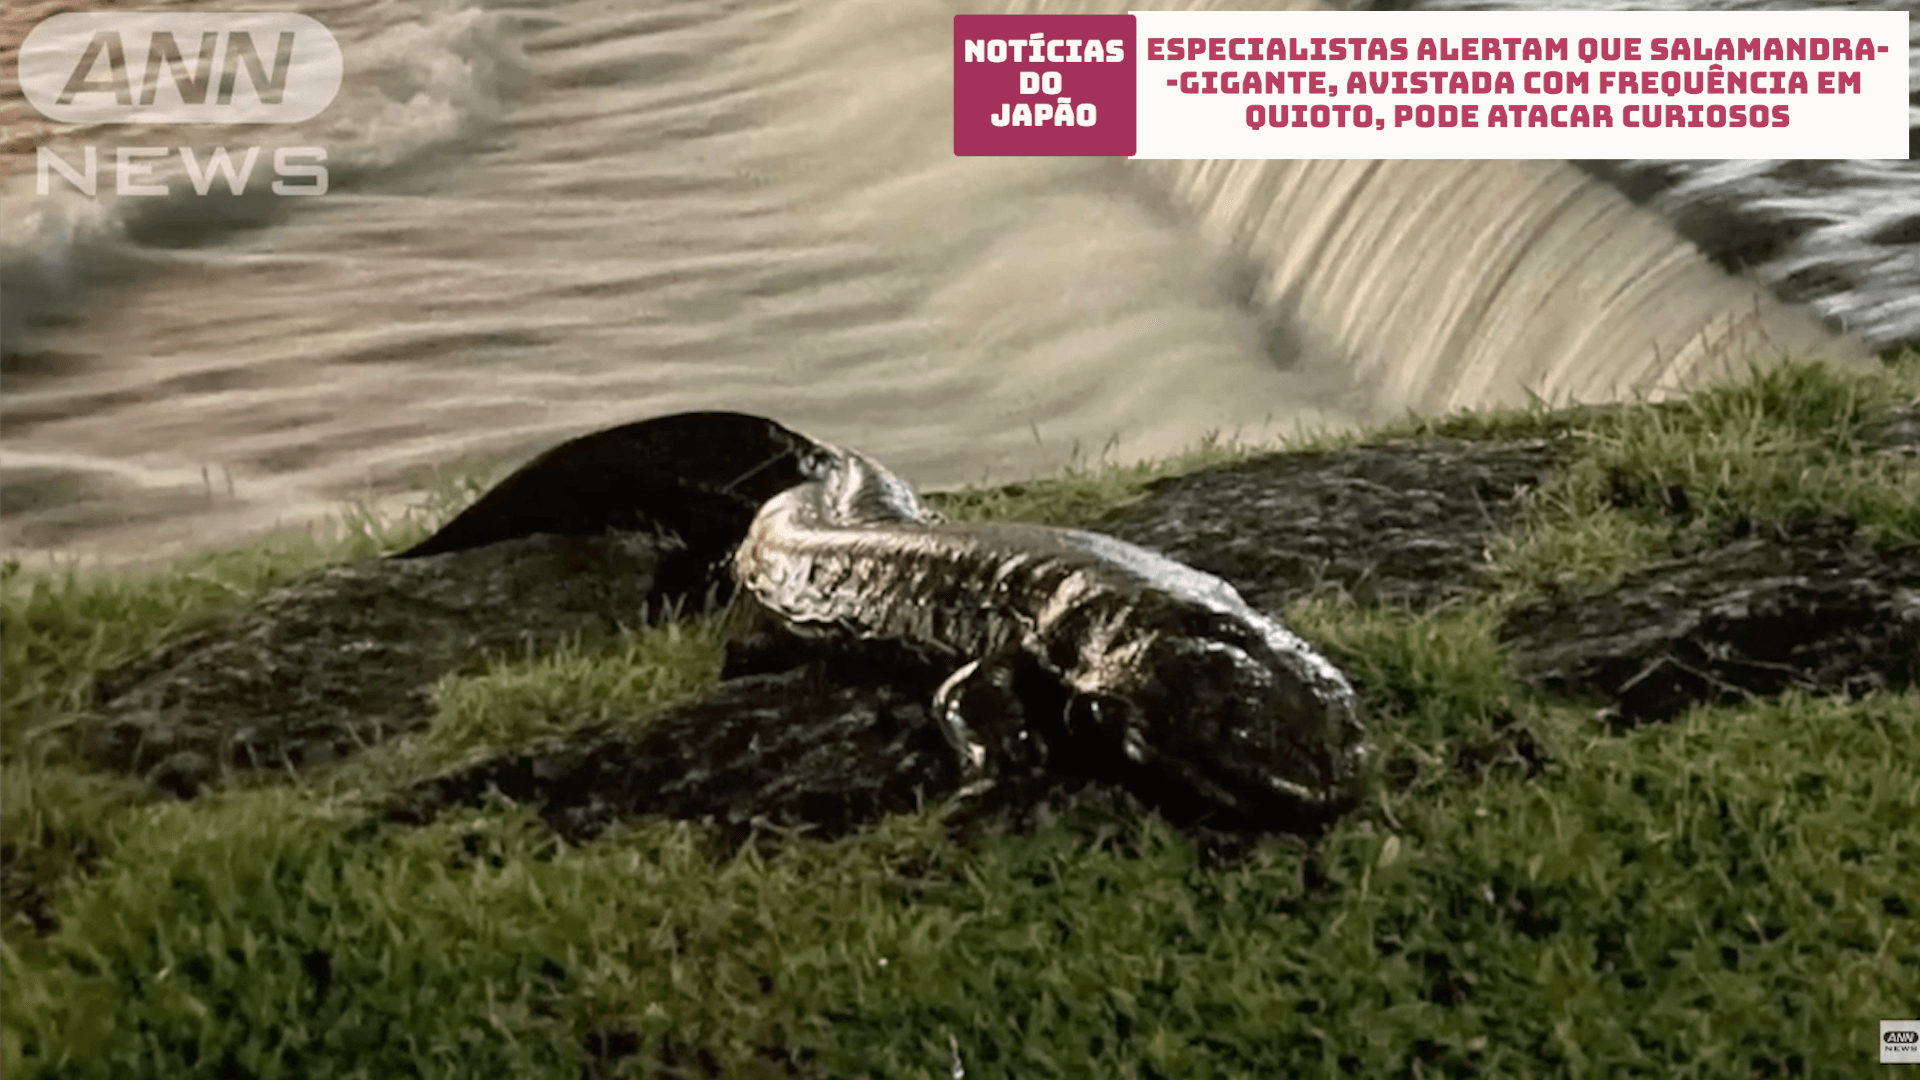 Especialistas alertam que Salamandra-gigante, avistada com frequência em Quioto, pode atacar curiosos